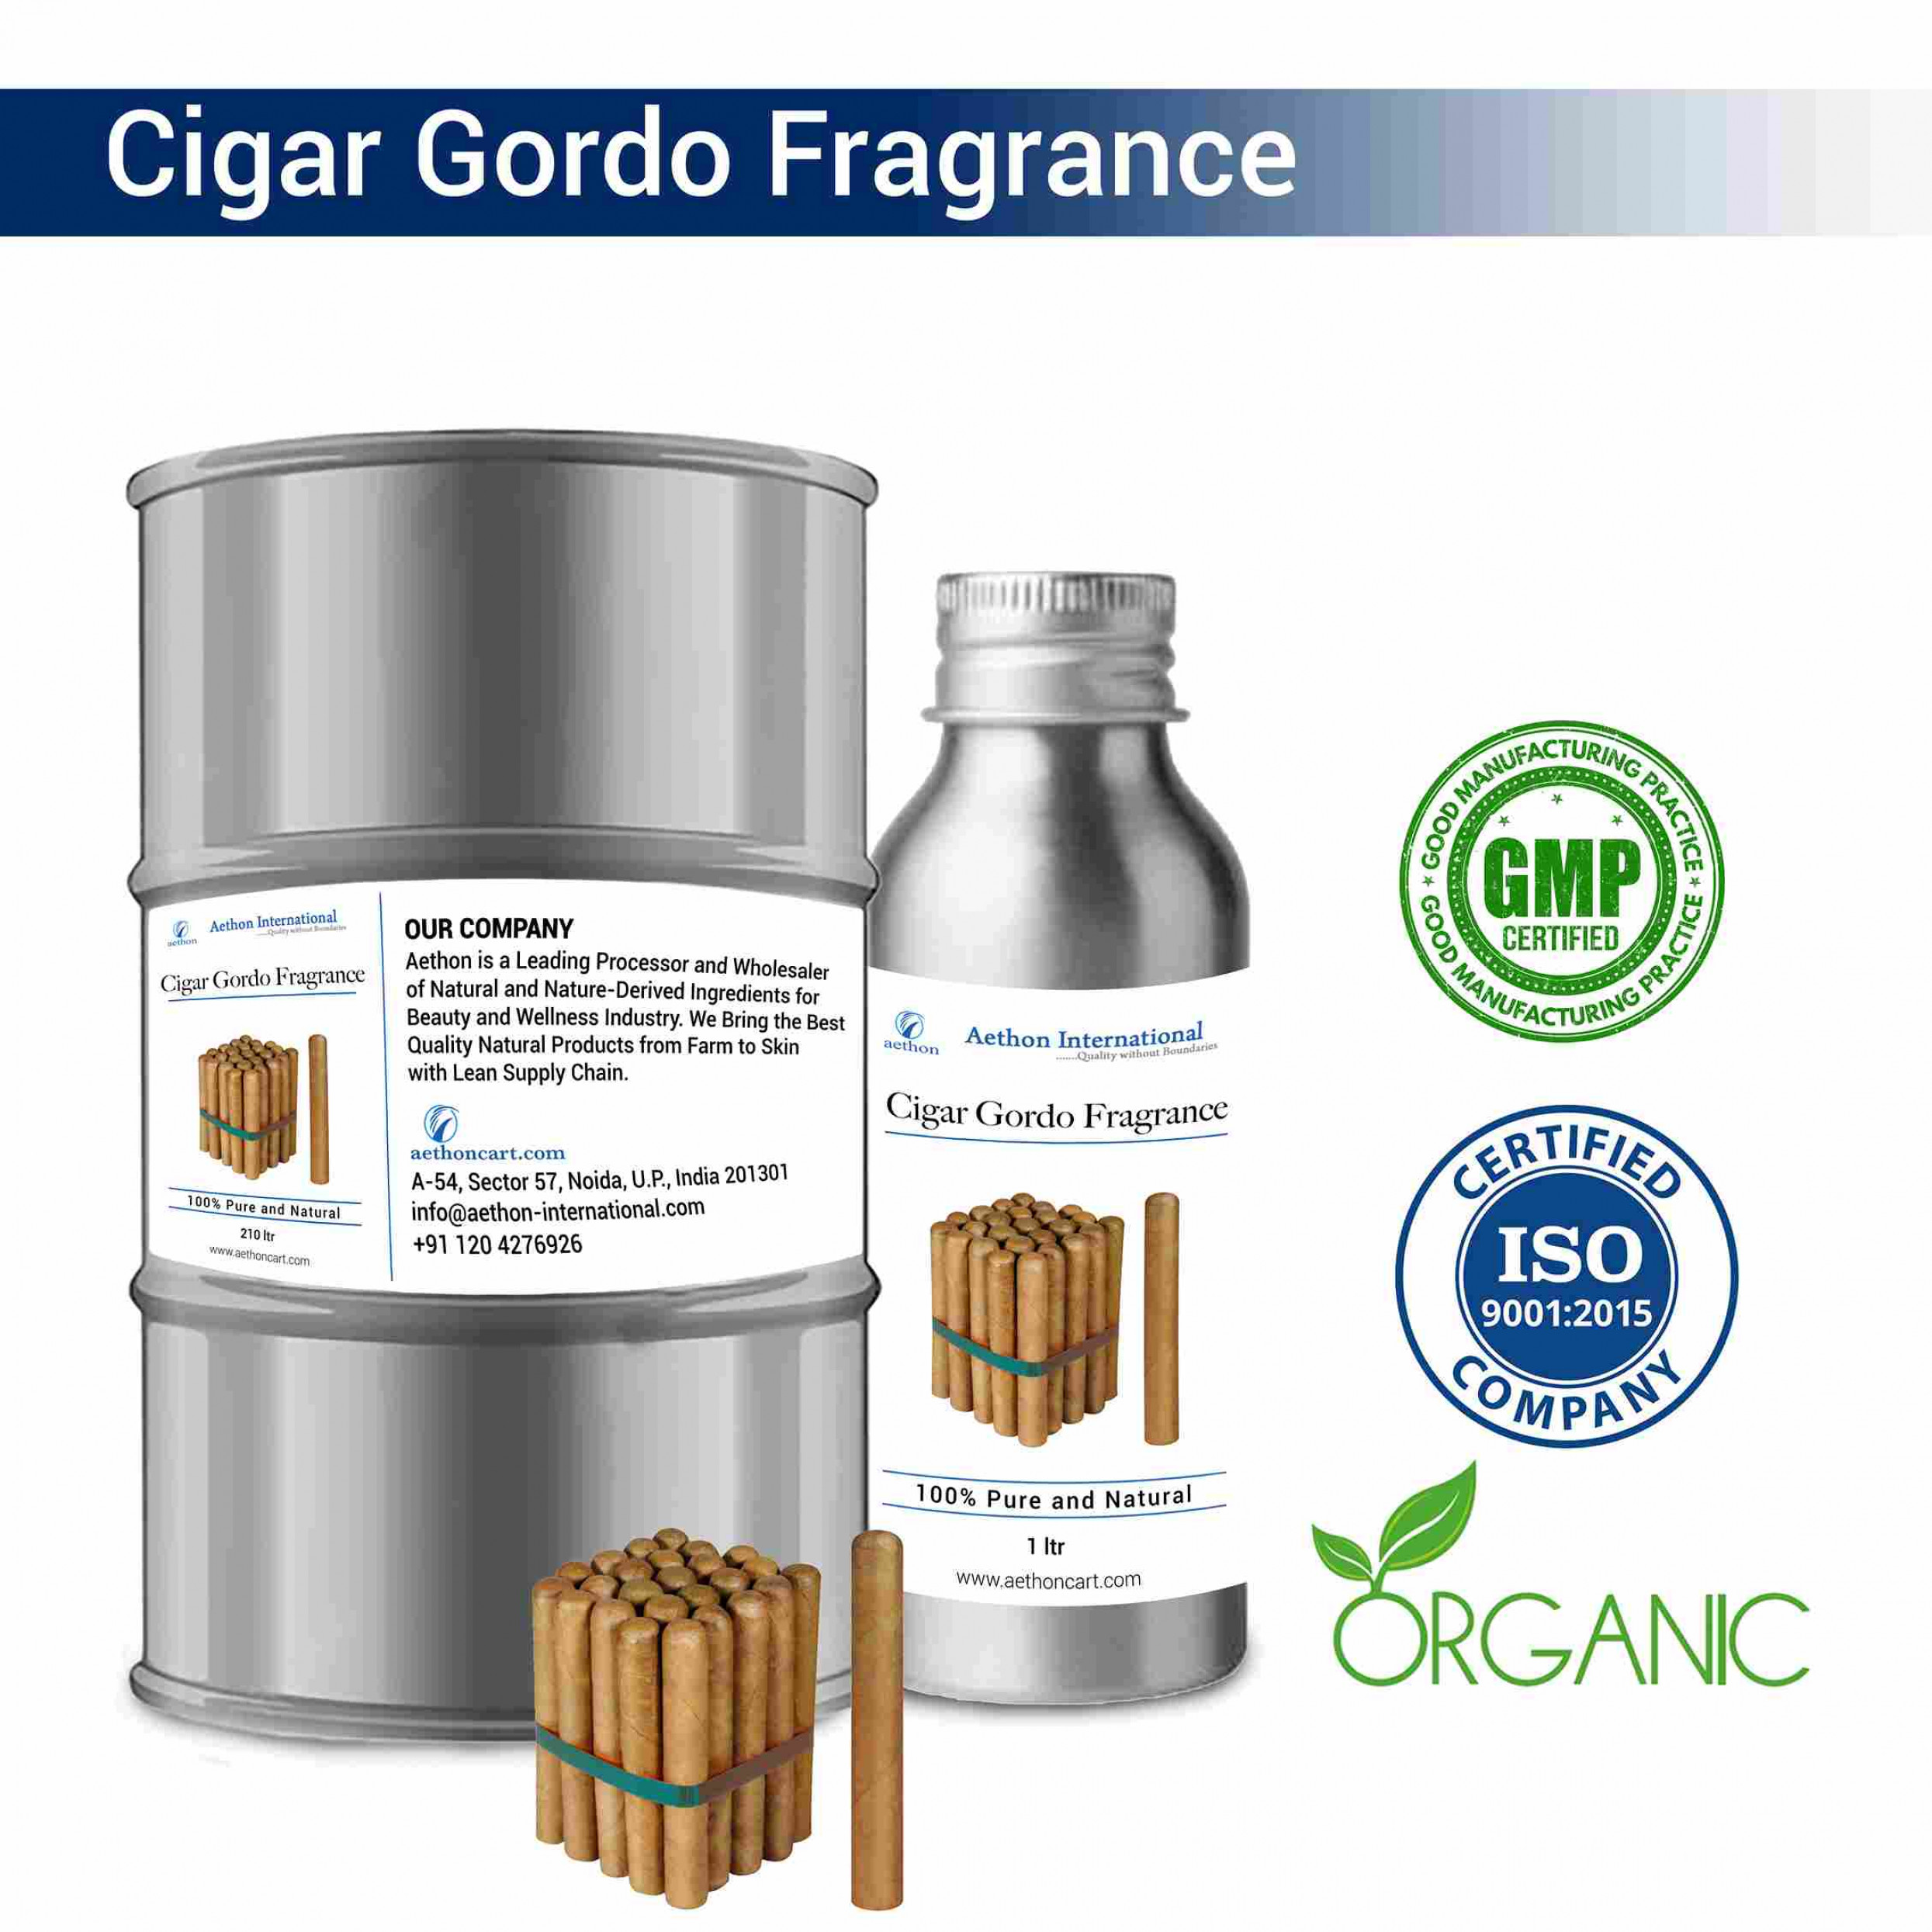 Cigar Gordo Fragrance